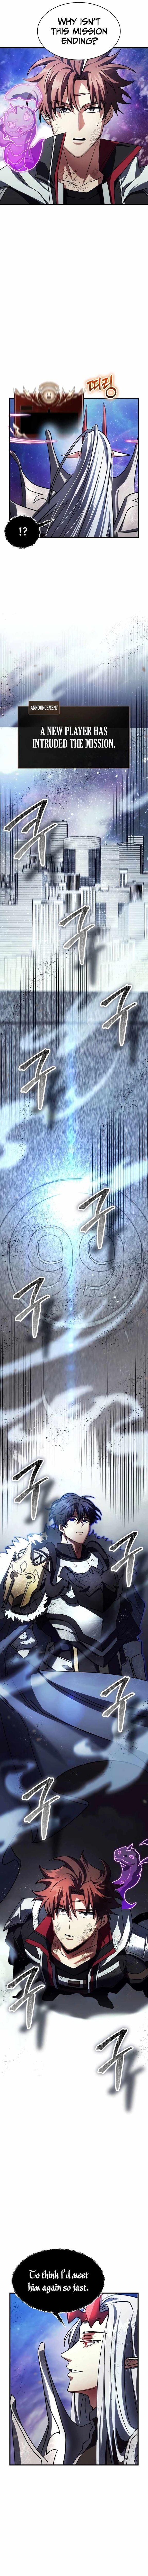 read Gods’ Gambit Chapter 39 Manga Online Free at Mangabuddy, MangaNato,Manhwatop | MangaSo.com